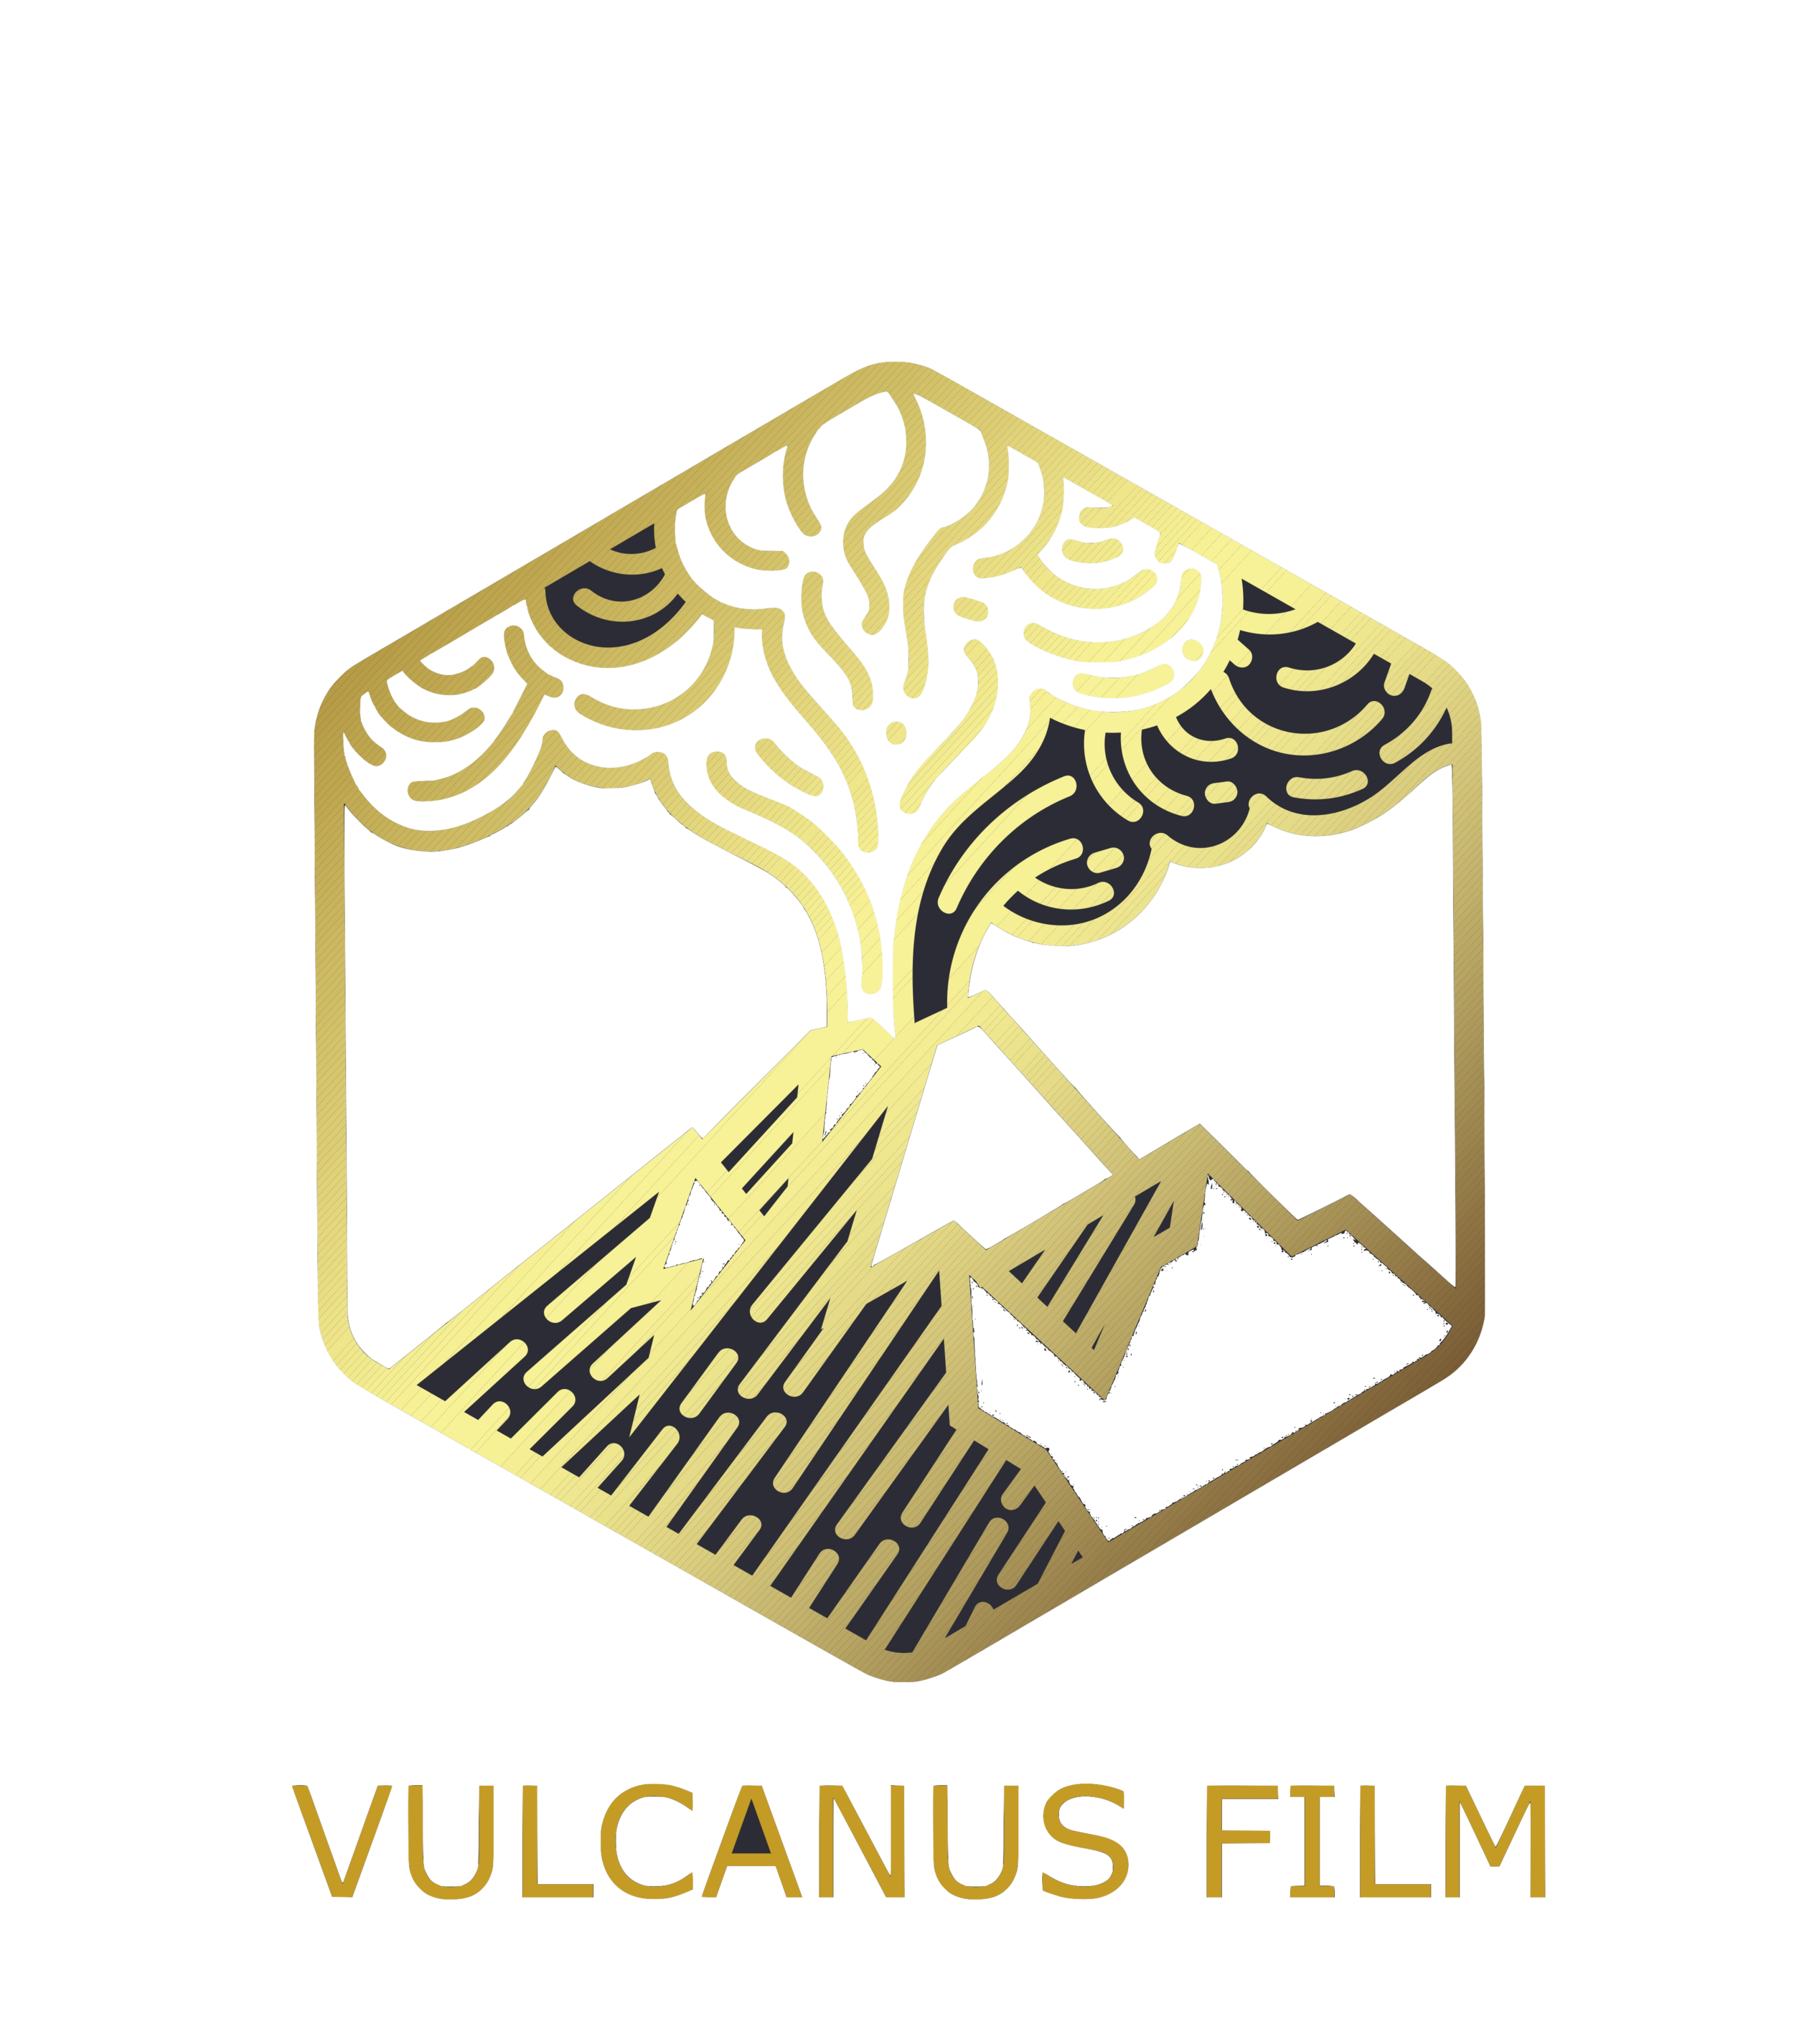 Vulcanus Film